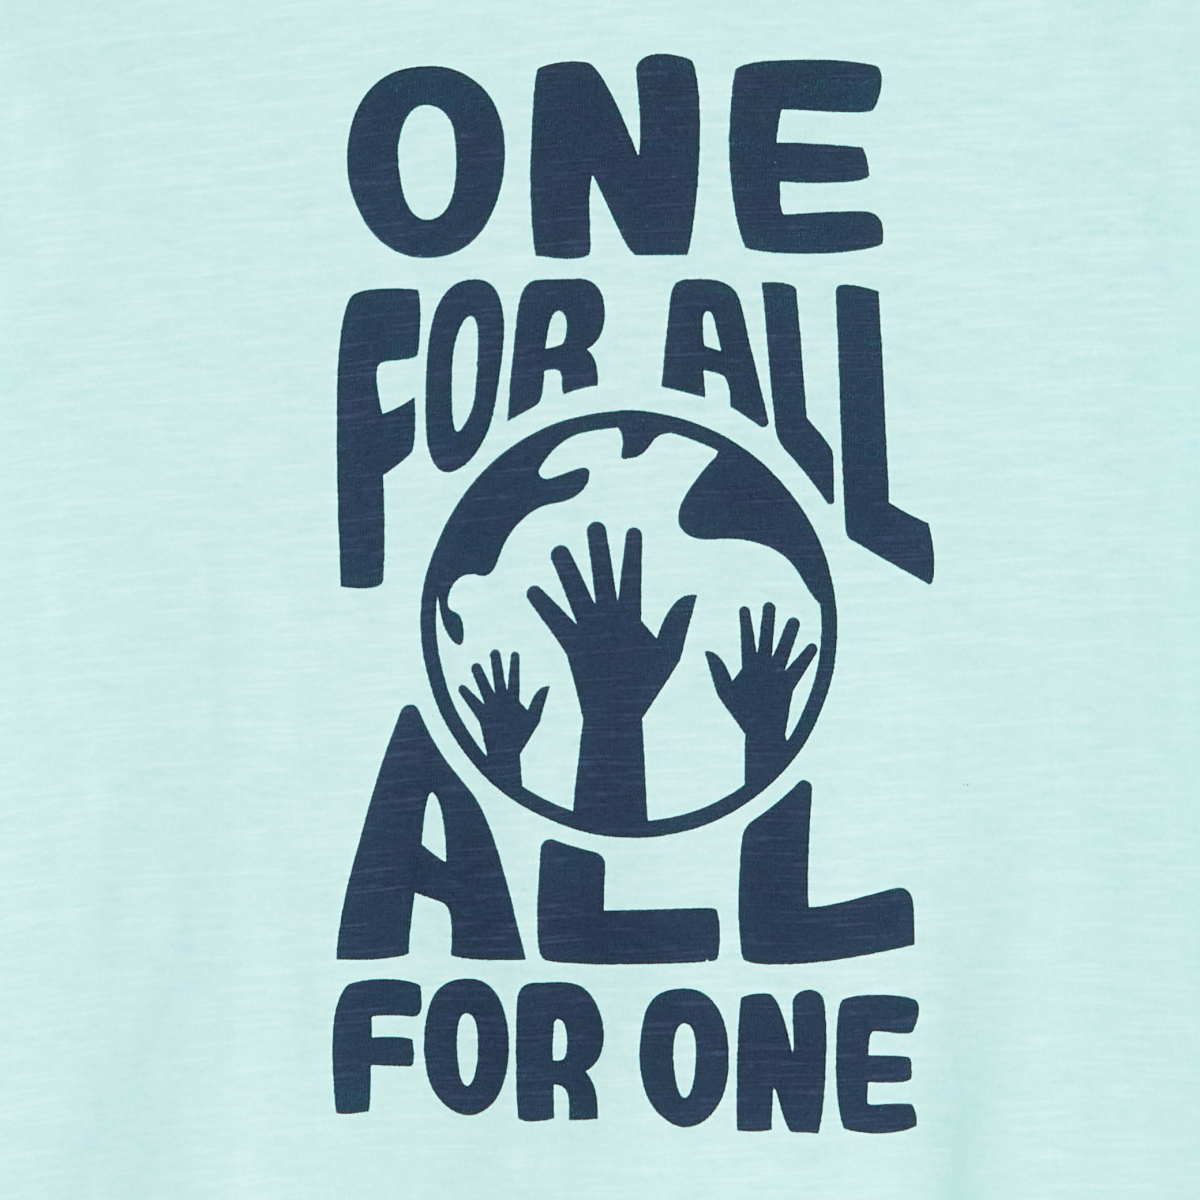 تي شيرت كم قصير مزين بعبارة "one for all all for one"